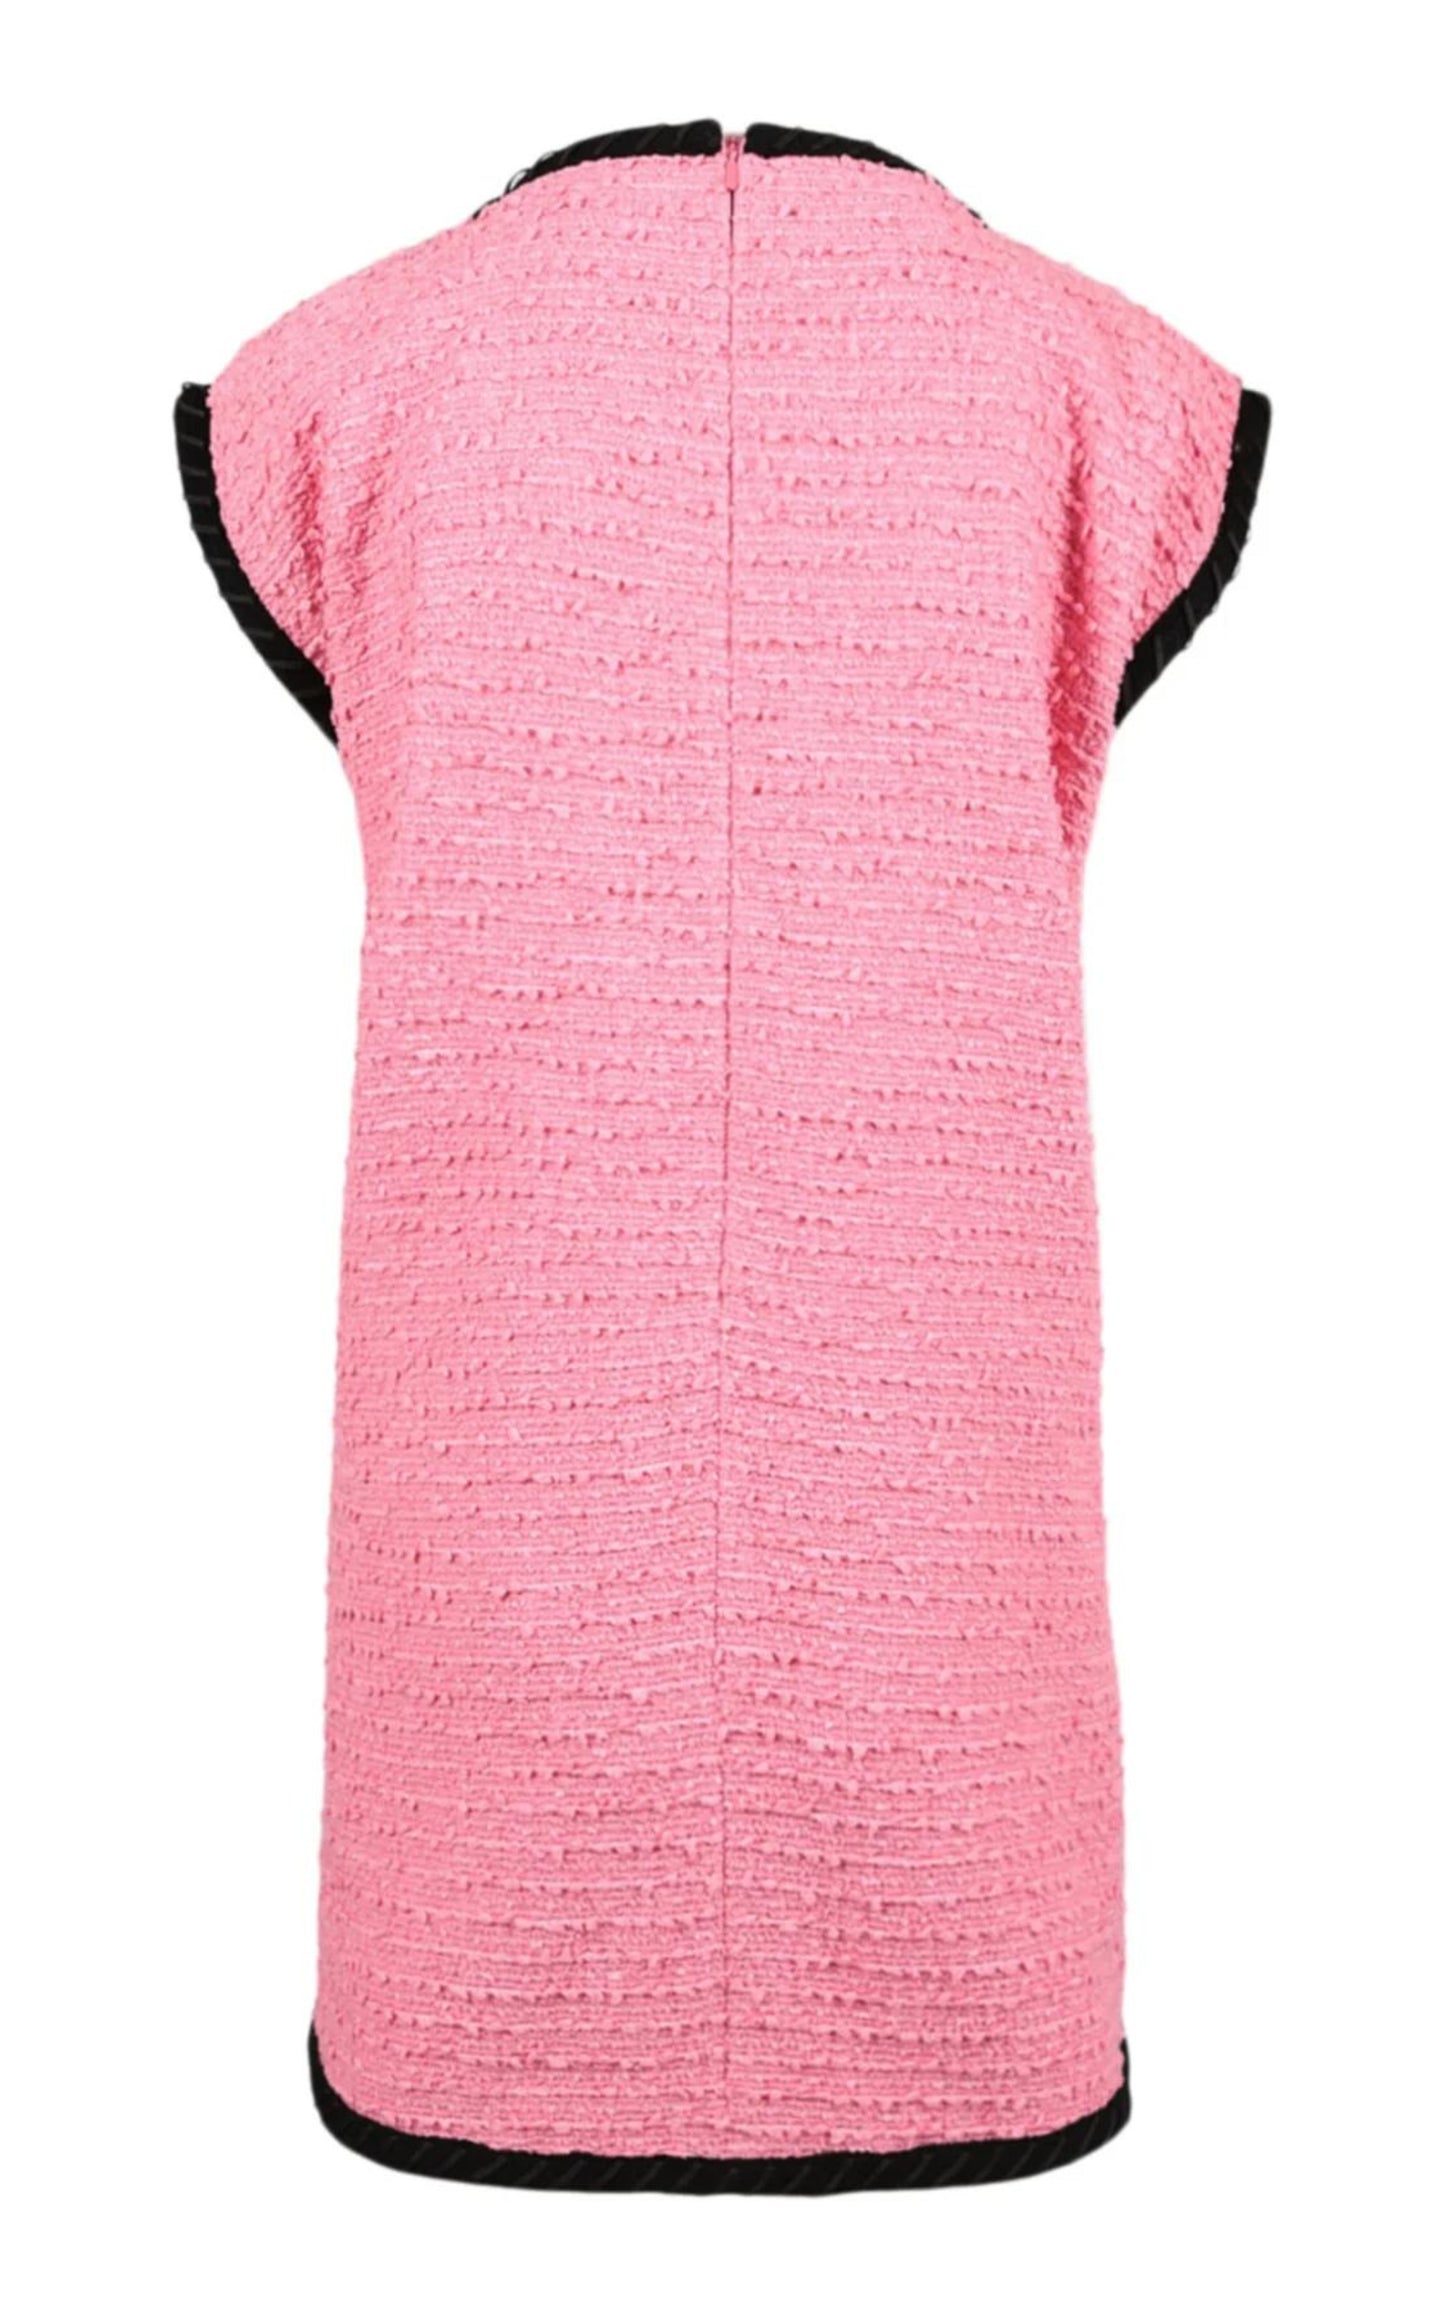 Wool Blend Pink Shift Dress